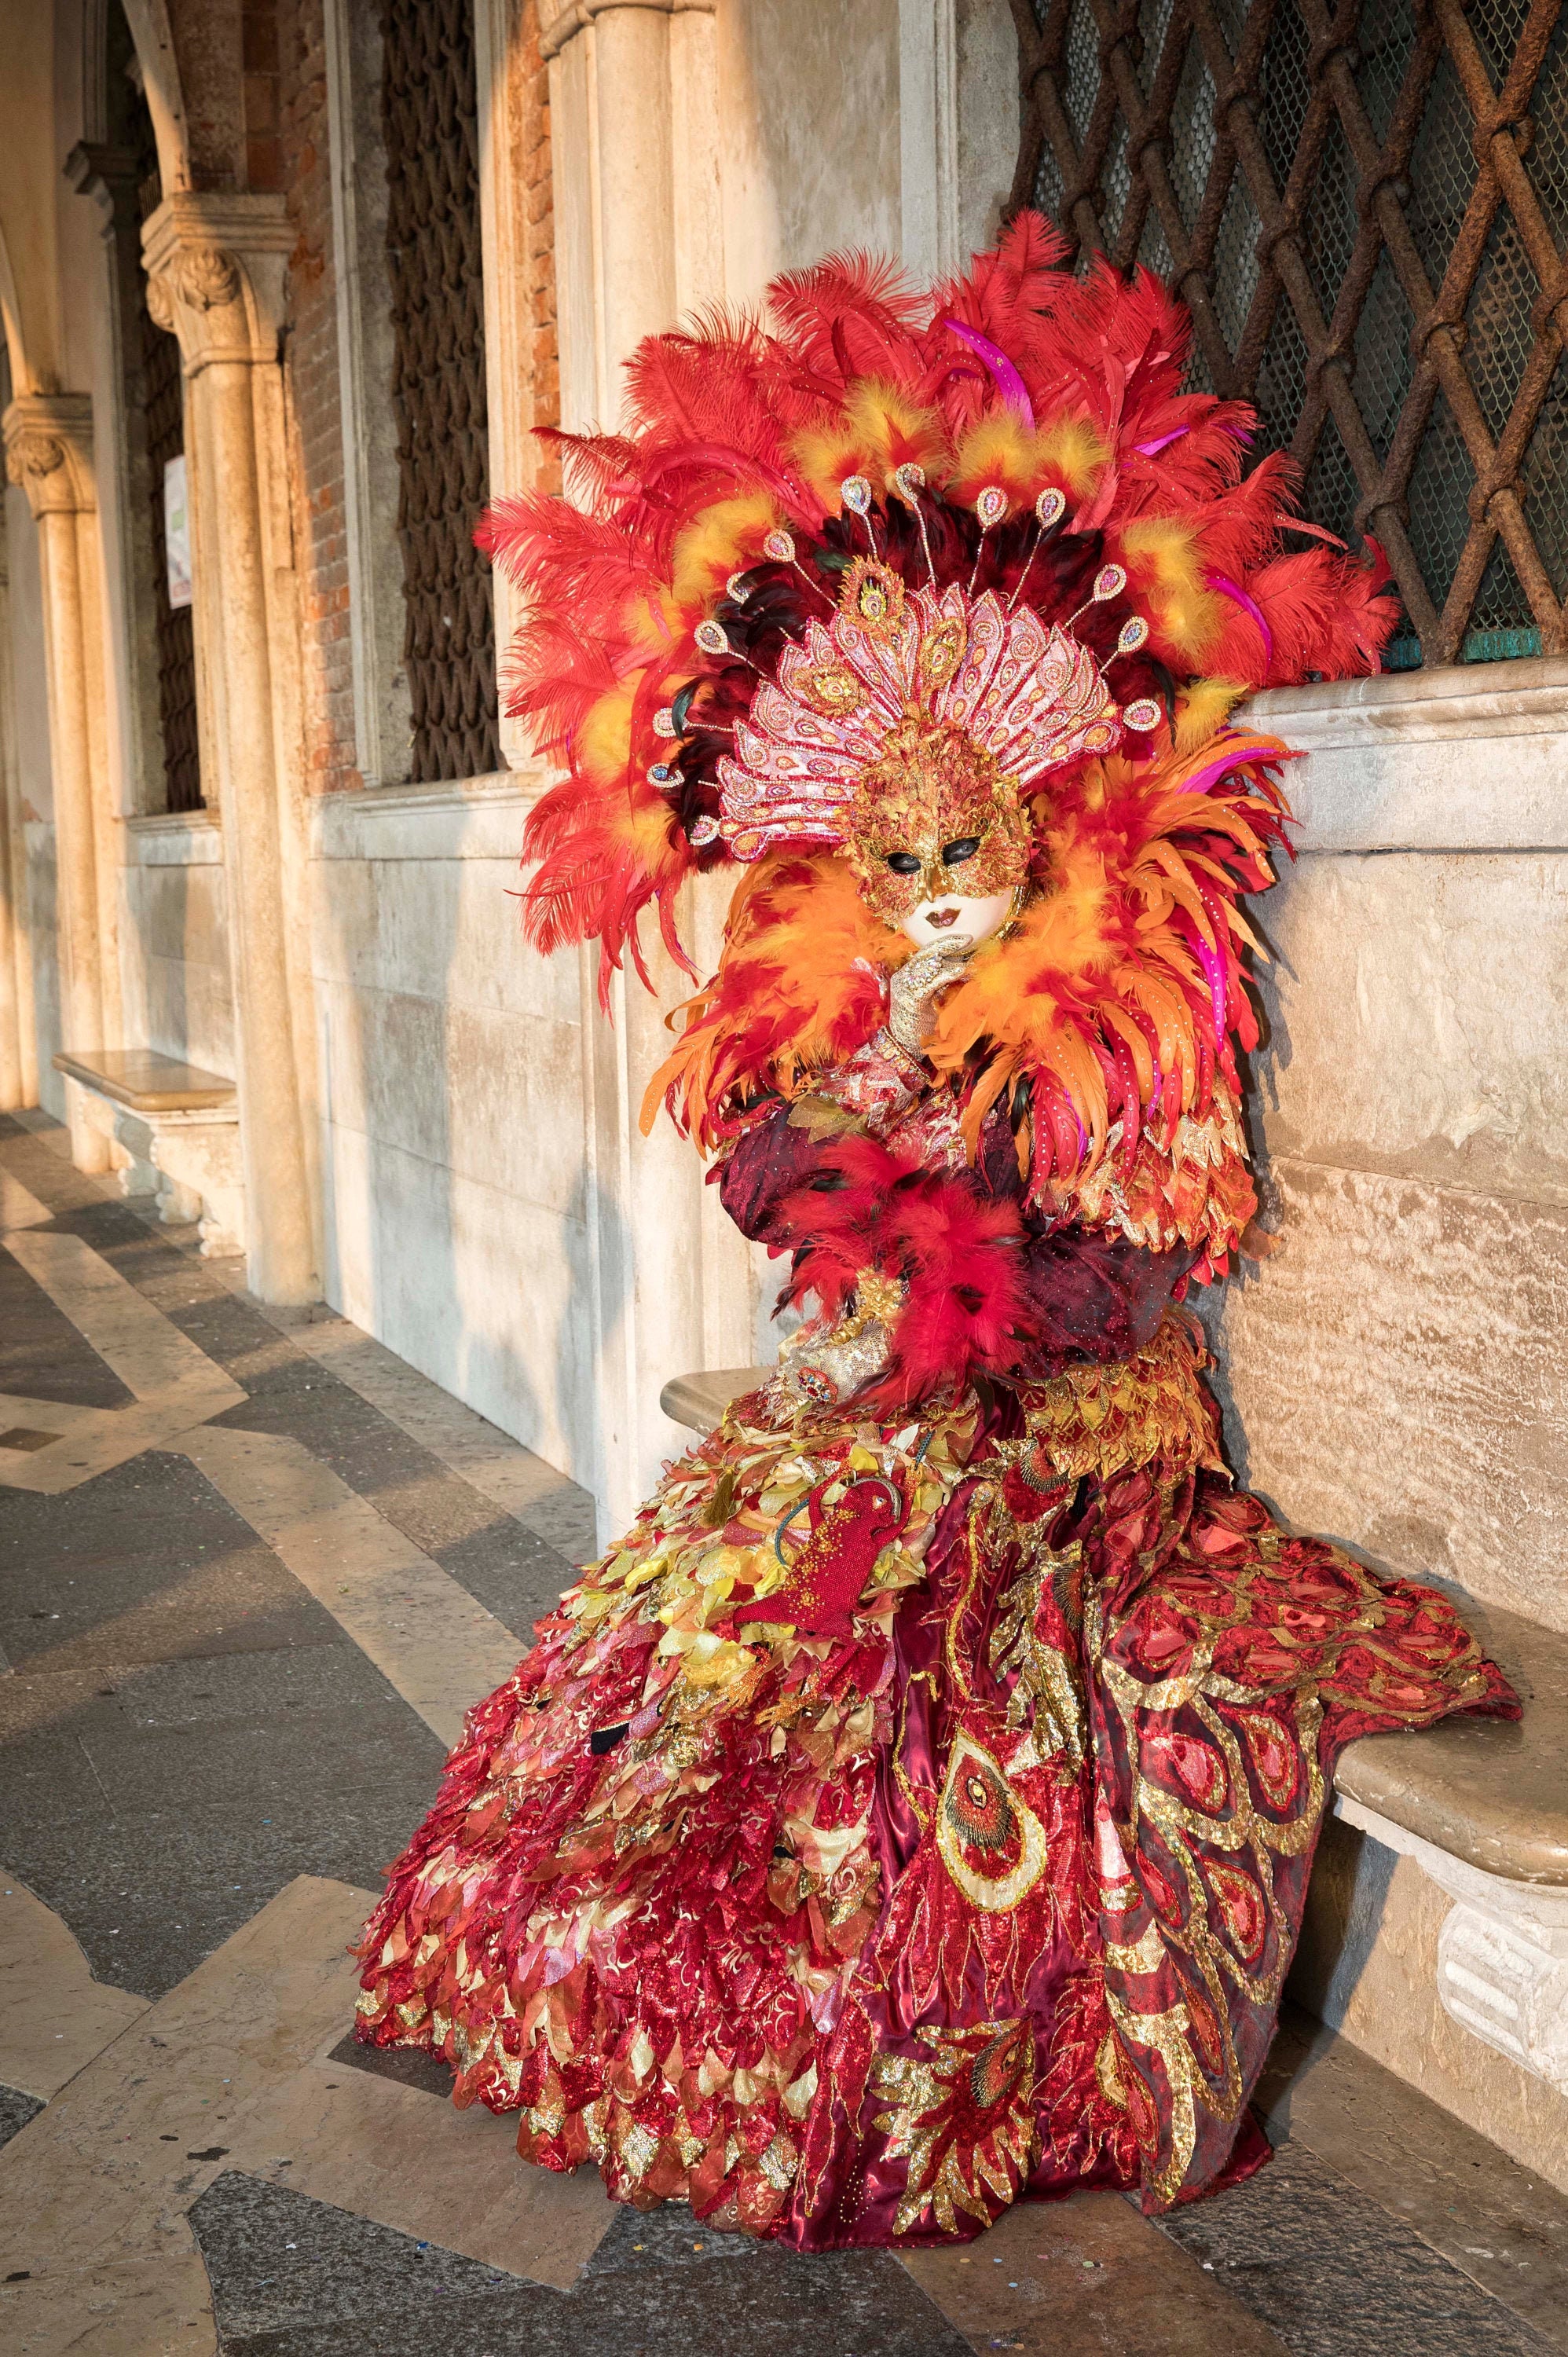 Carnaval De Venecia 2019 Disfraz De Carnaval Veneciano Máscara De Carnaval  Veneciana Venecia, Italia Fotografía editorial - Imagen de modelo, pluma:  162618242